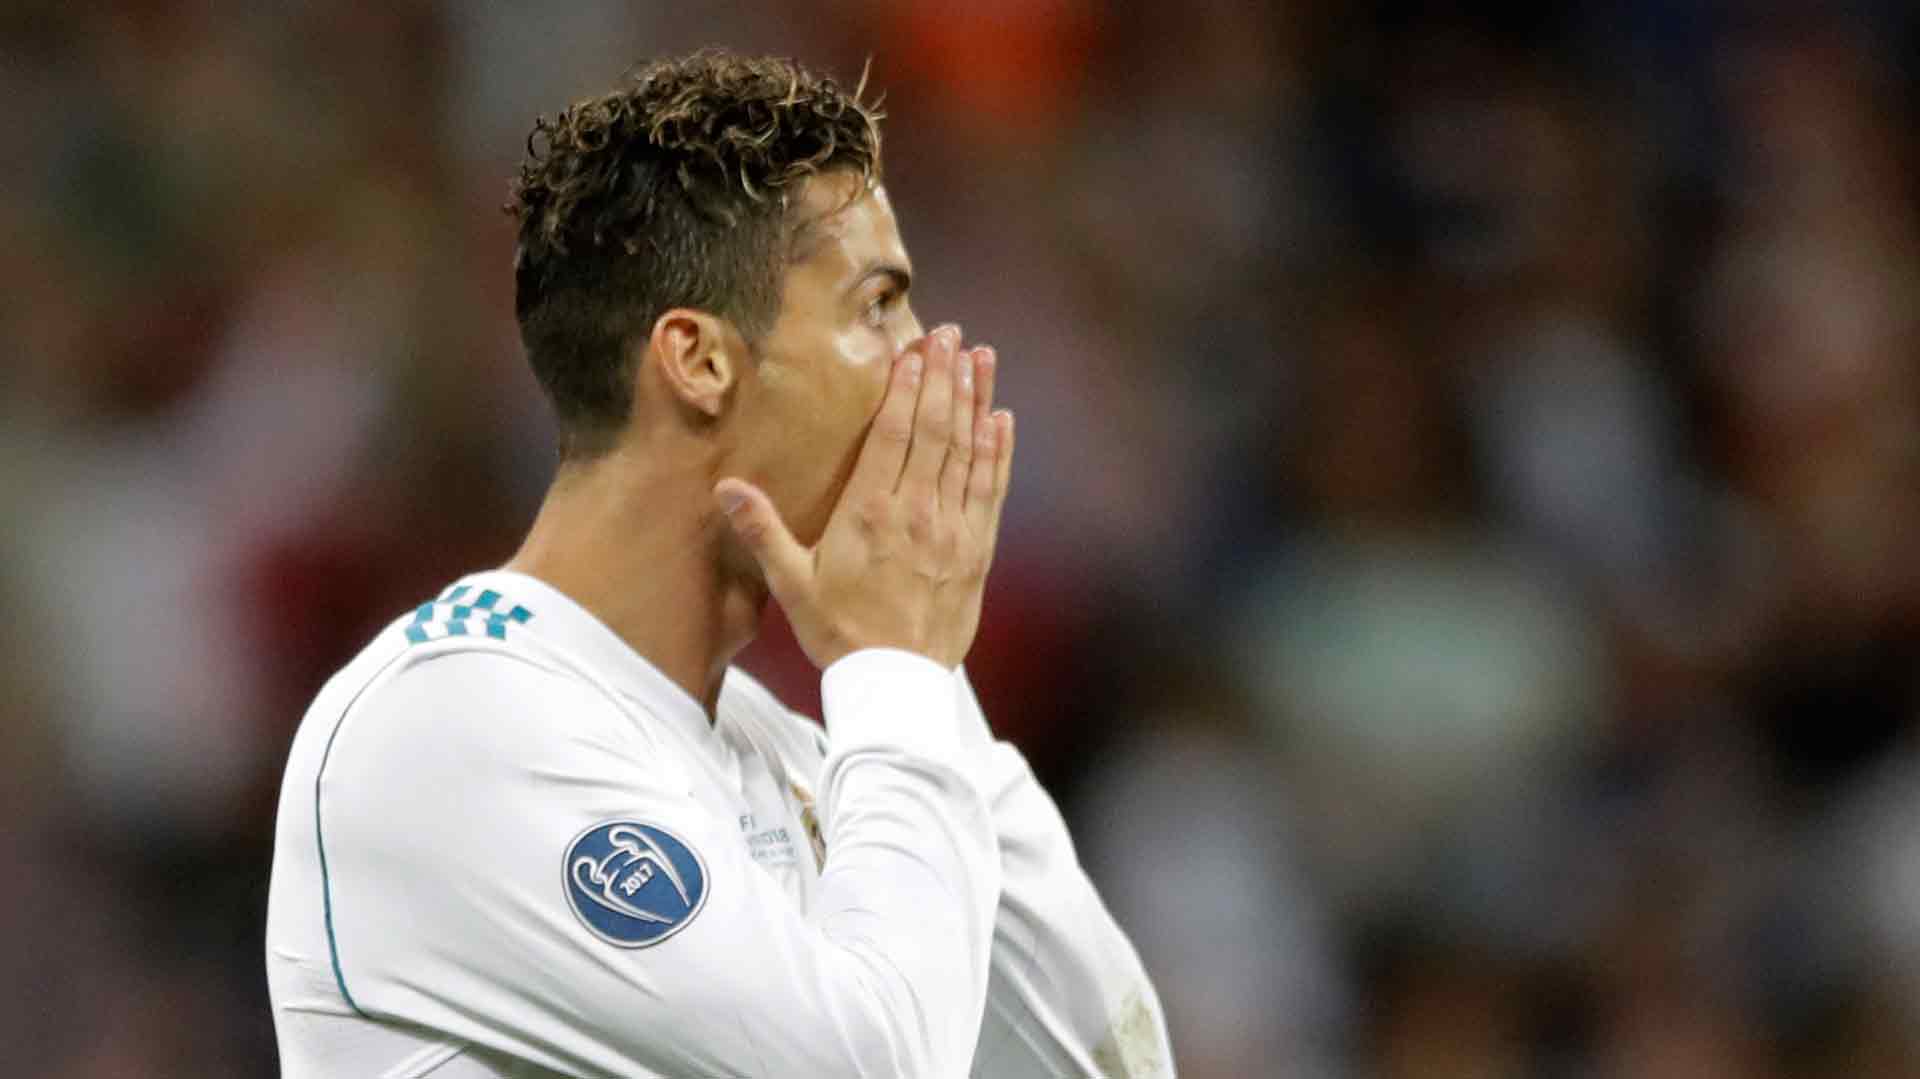 Cristiano Ronaldo abandona el Real Madrid y ficha por la Juventus por 105 millones